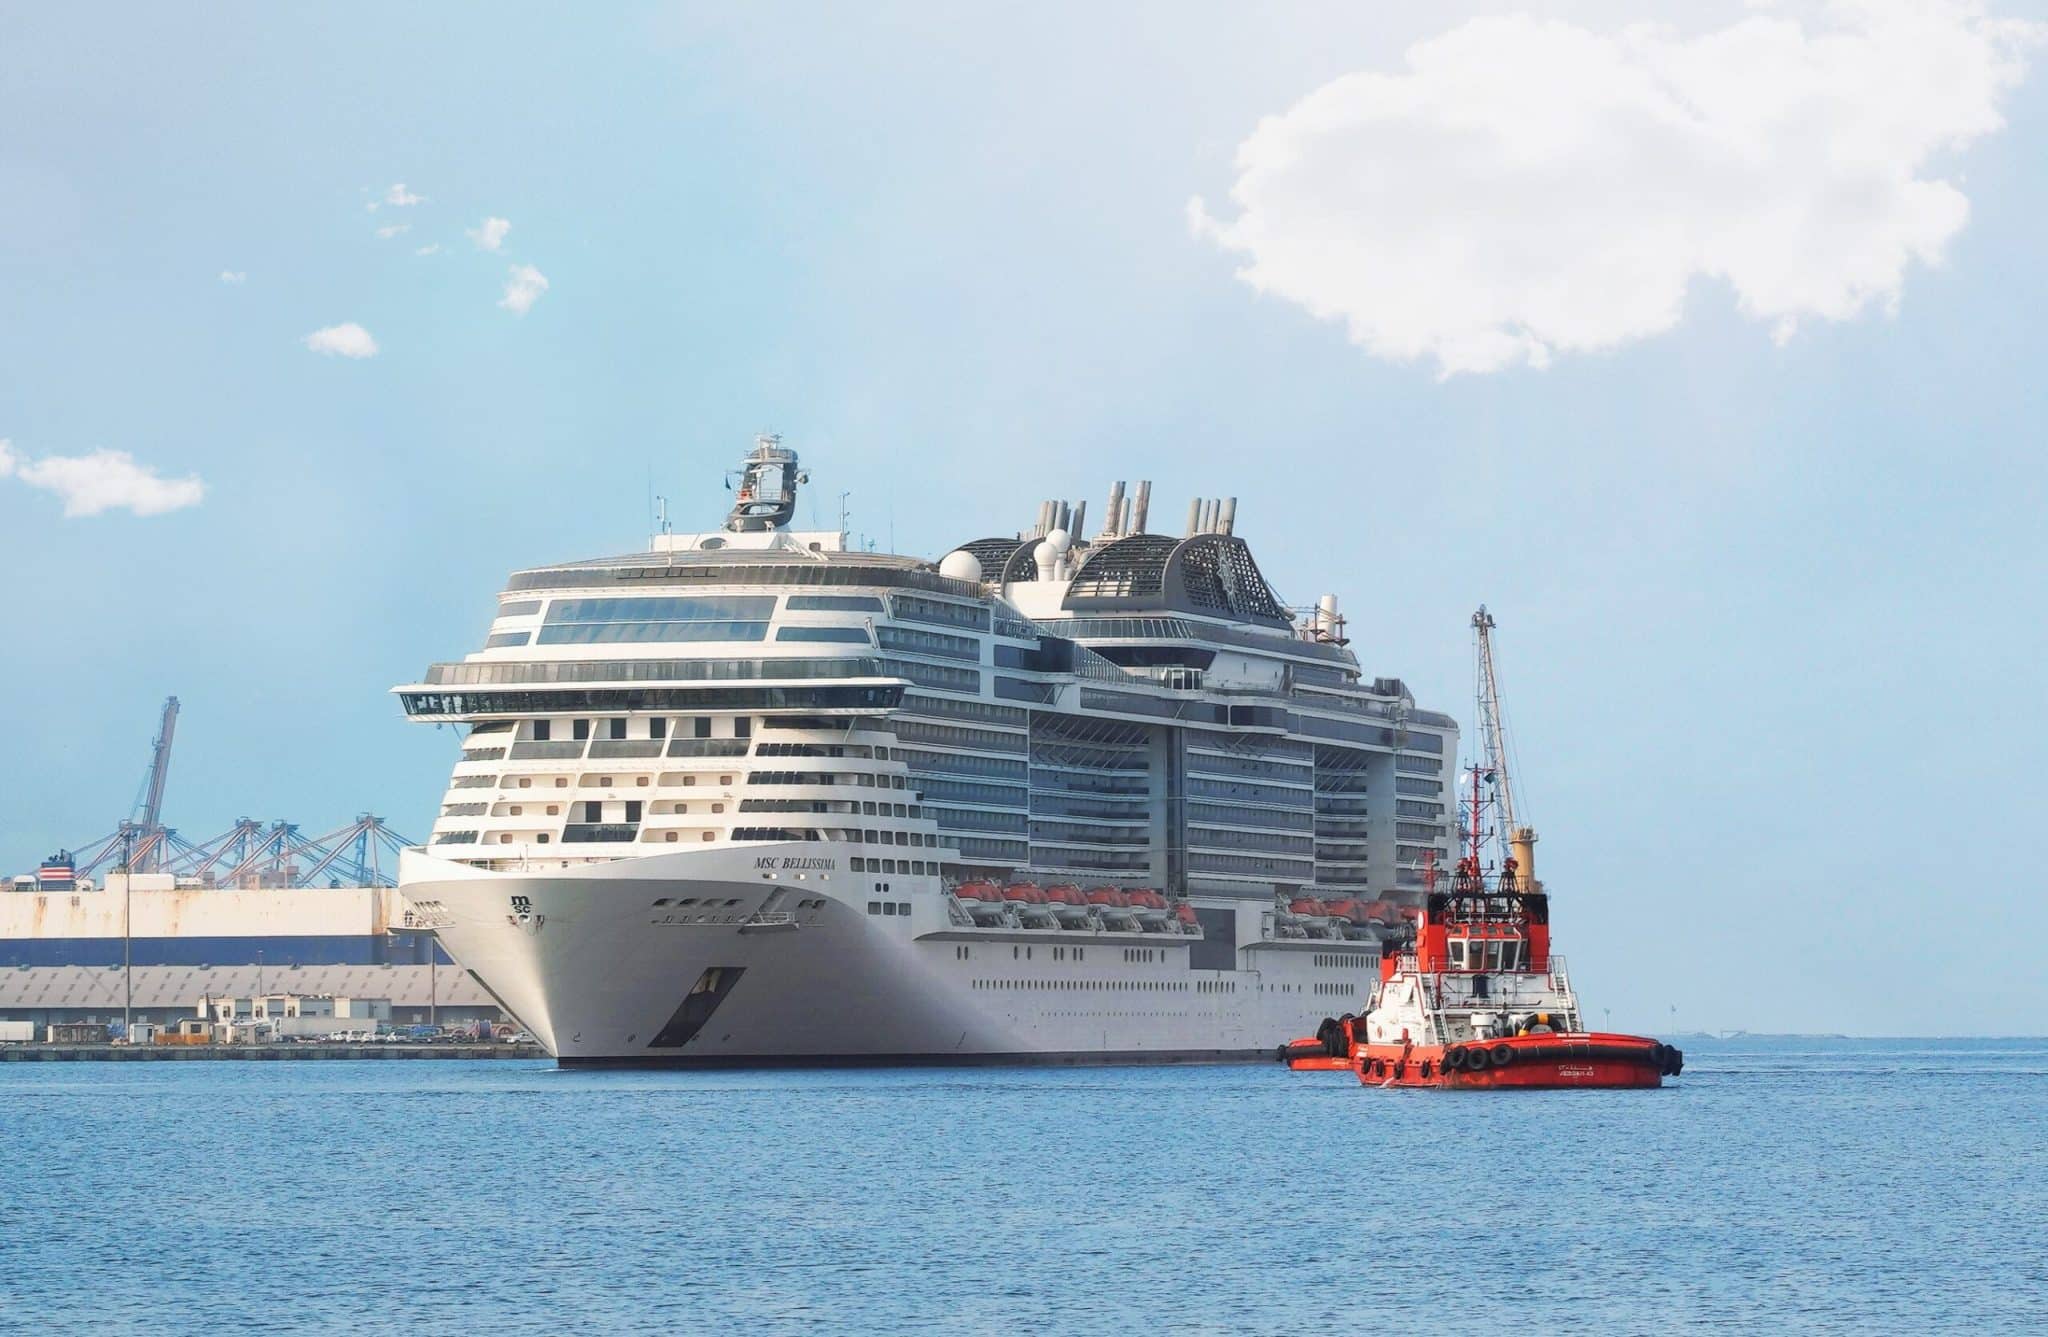 MSC zieht Start der Saudi-Arabien Saison vor: Auf der MSC Bellissima reisen Gäste des Charterers Cruise Saudi